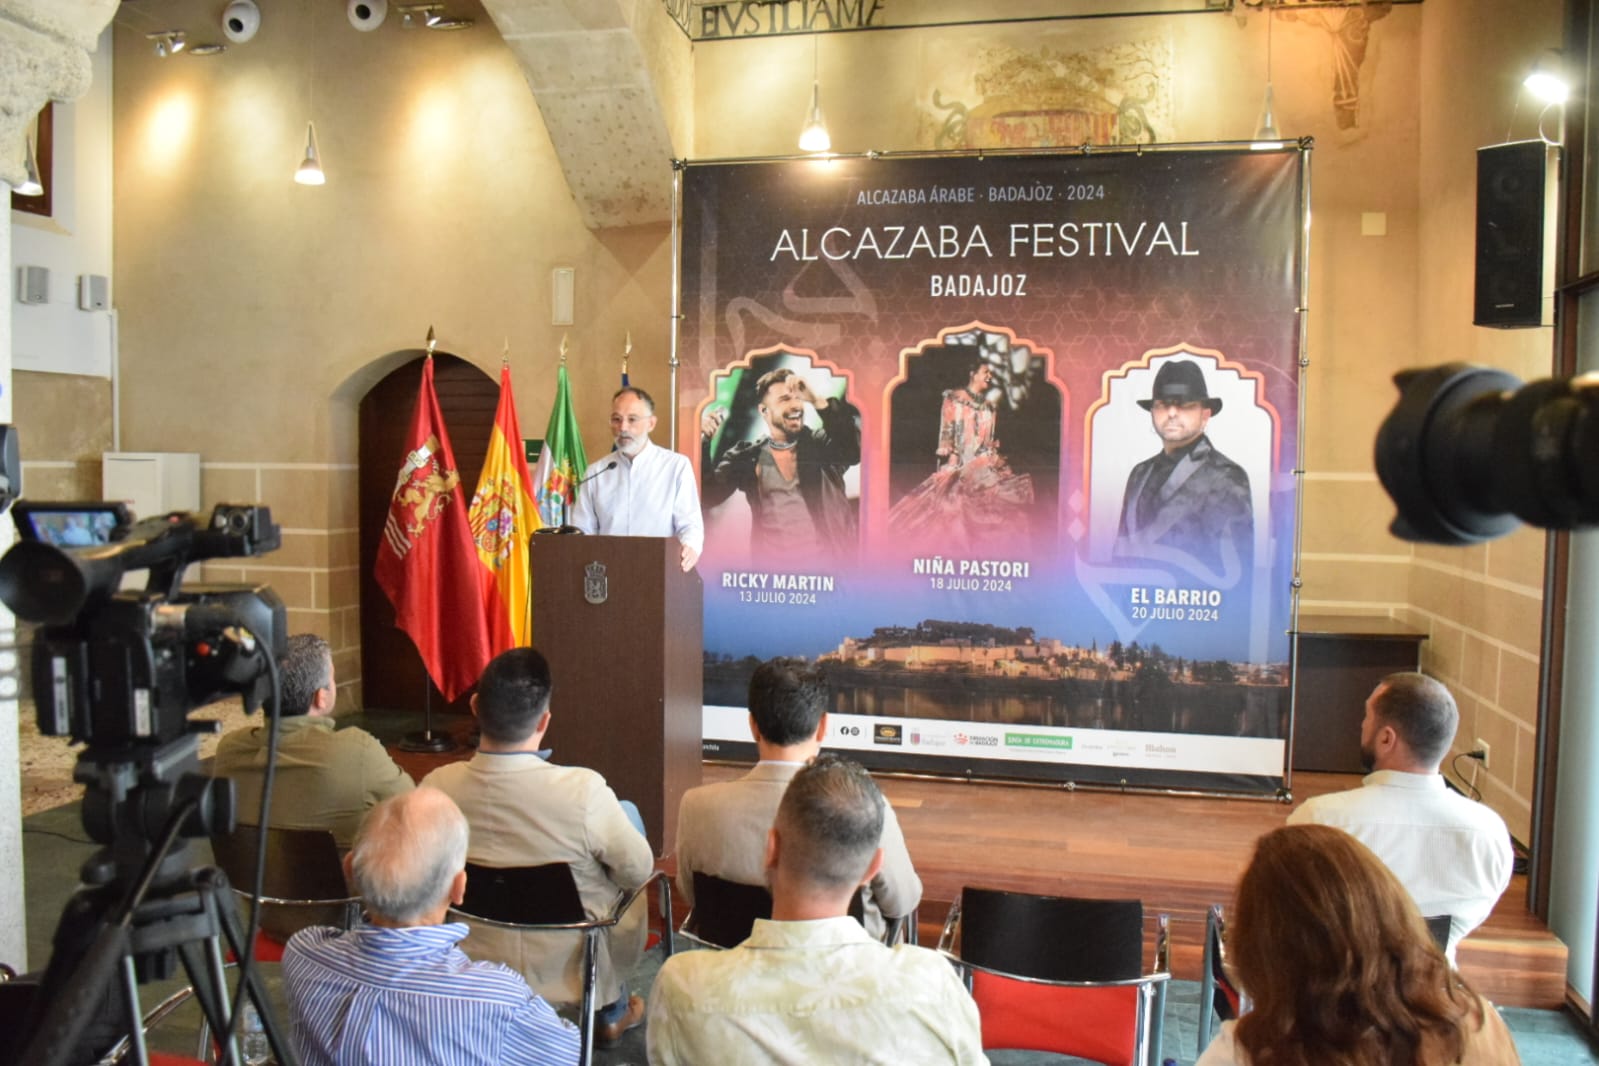 Image 2 of article Ricky Martin, El Barrio y Niña Pastori conforman el cartel del Alcazaba Festival 2024